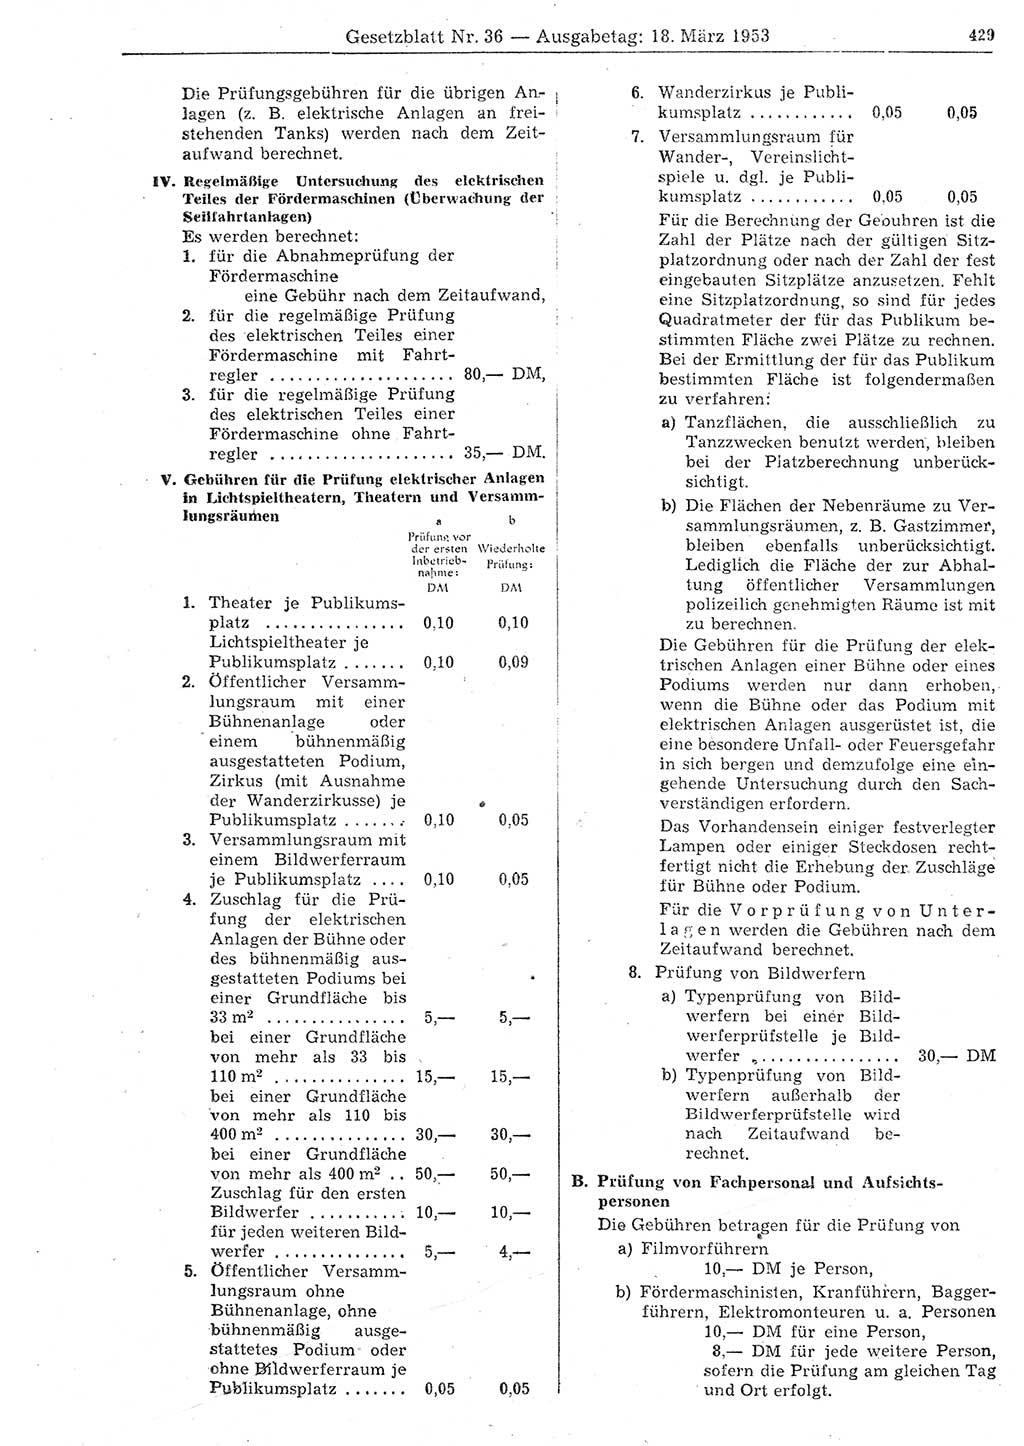 Gesetzblatt (GBl.) der Deutschen Demokratischen Republik (DDR) 1953, Seite 429 (GBl. DDR 1953, S. 429)